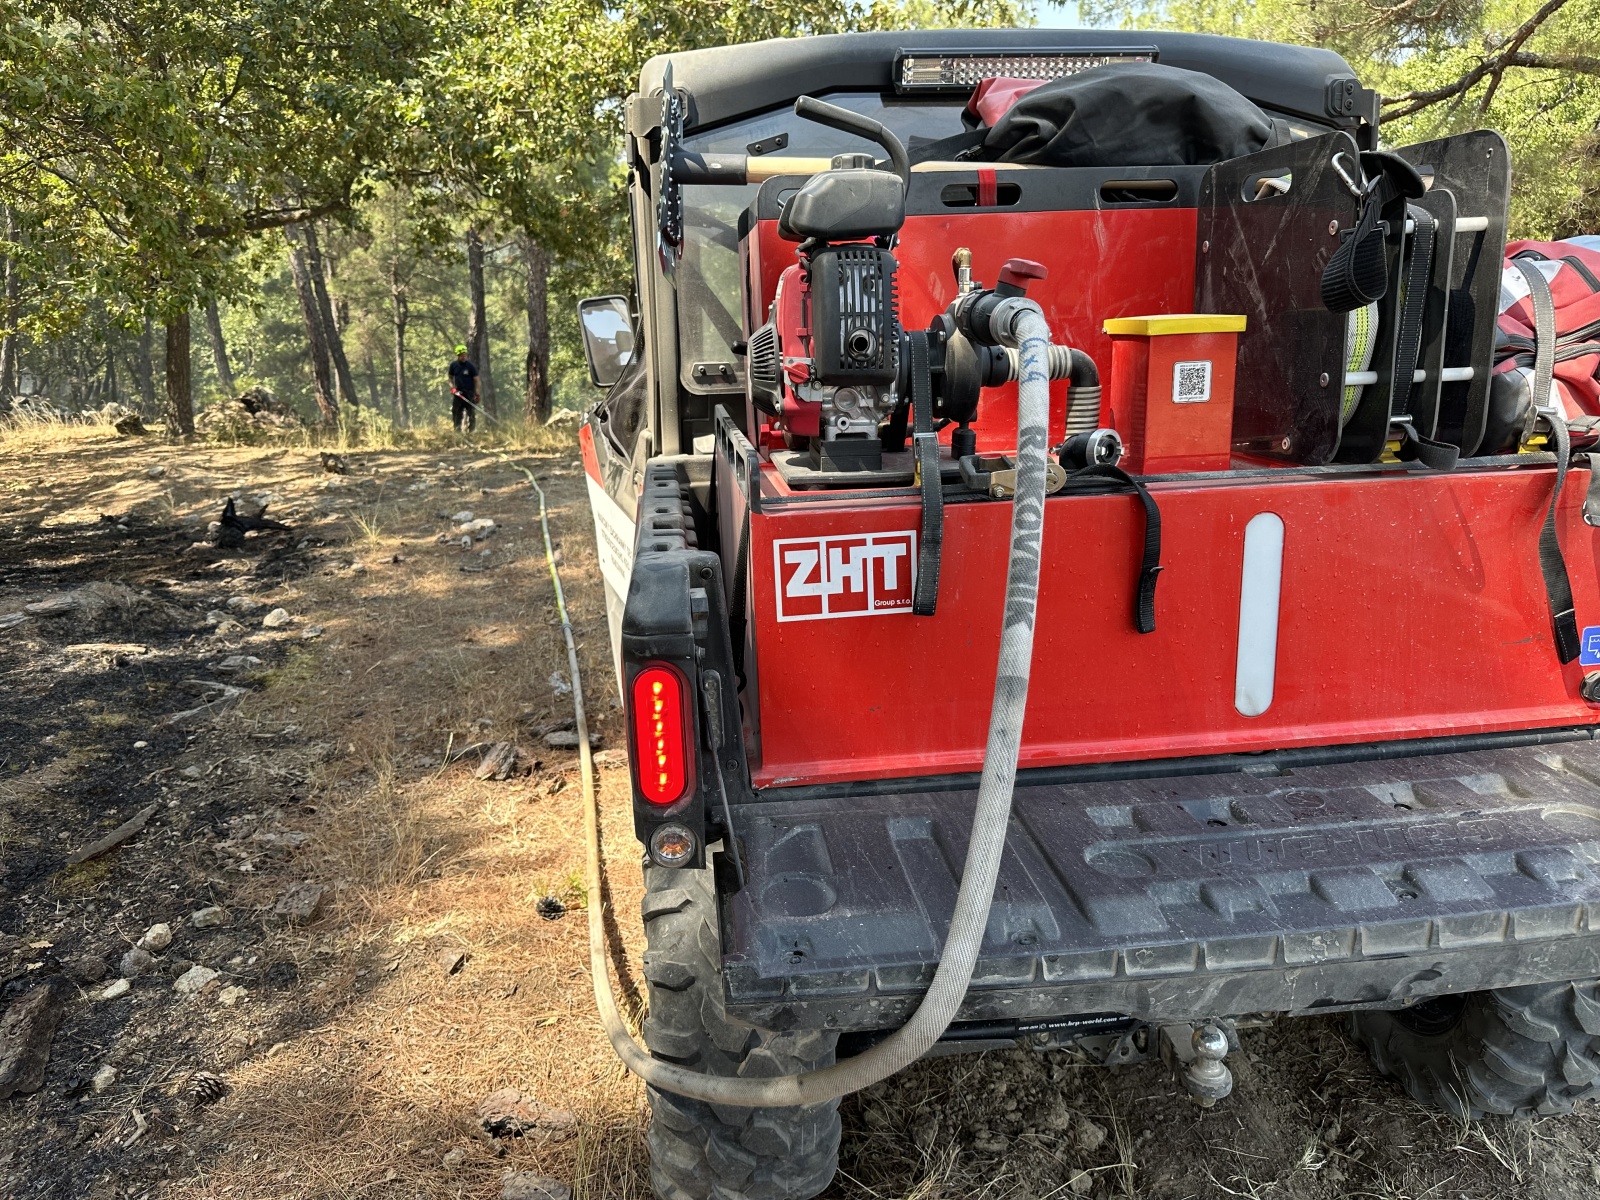 021-Pomoc českých hasičů při požárech v Řecku.JPG